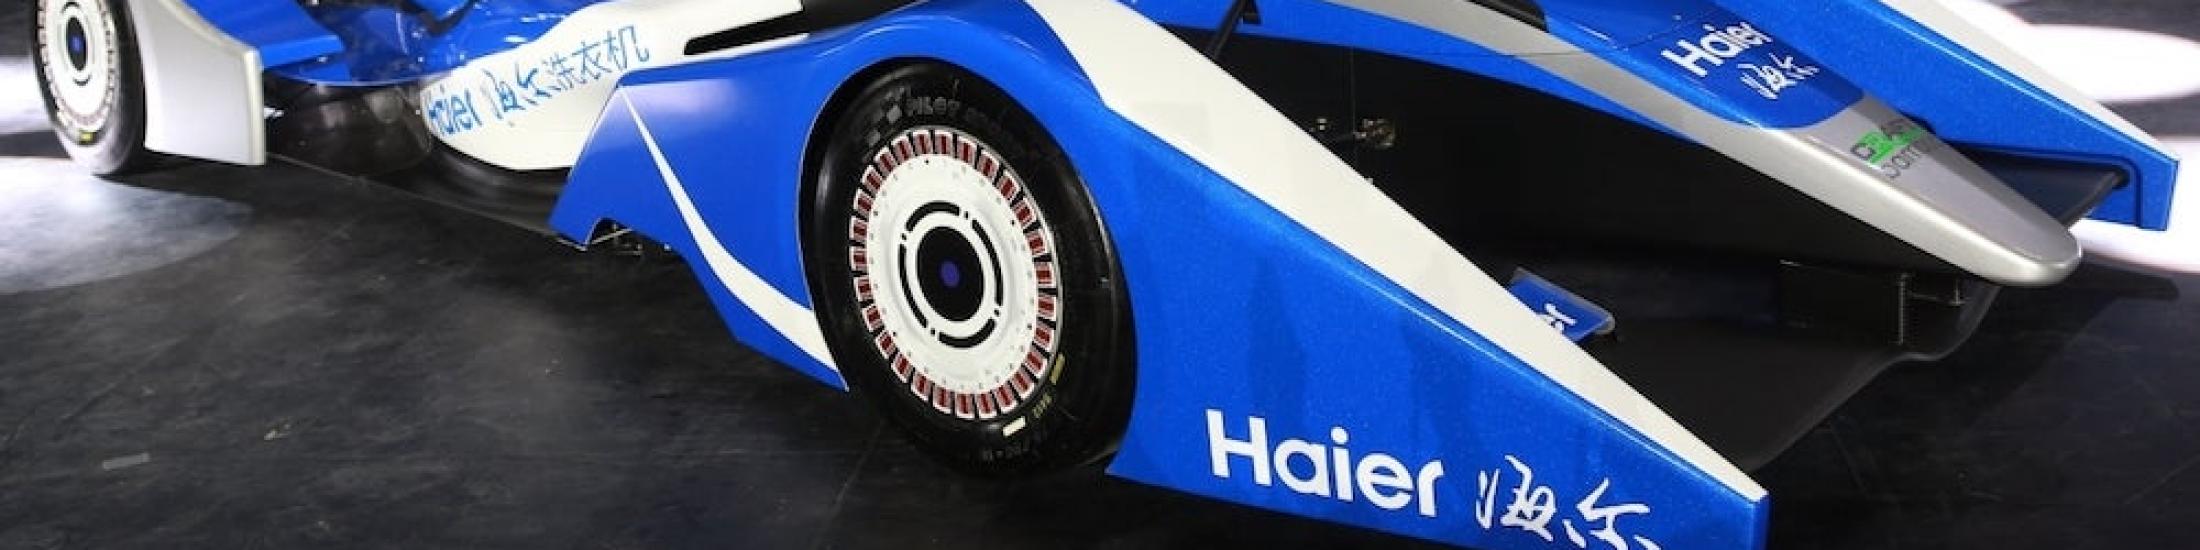 Haier Racing Car 